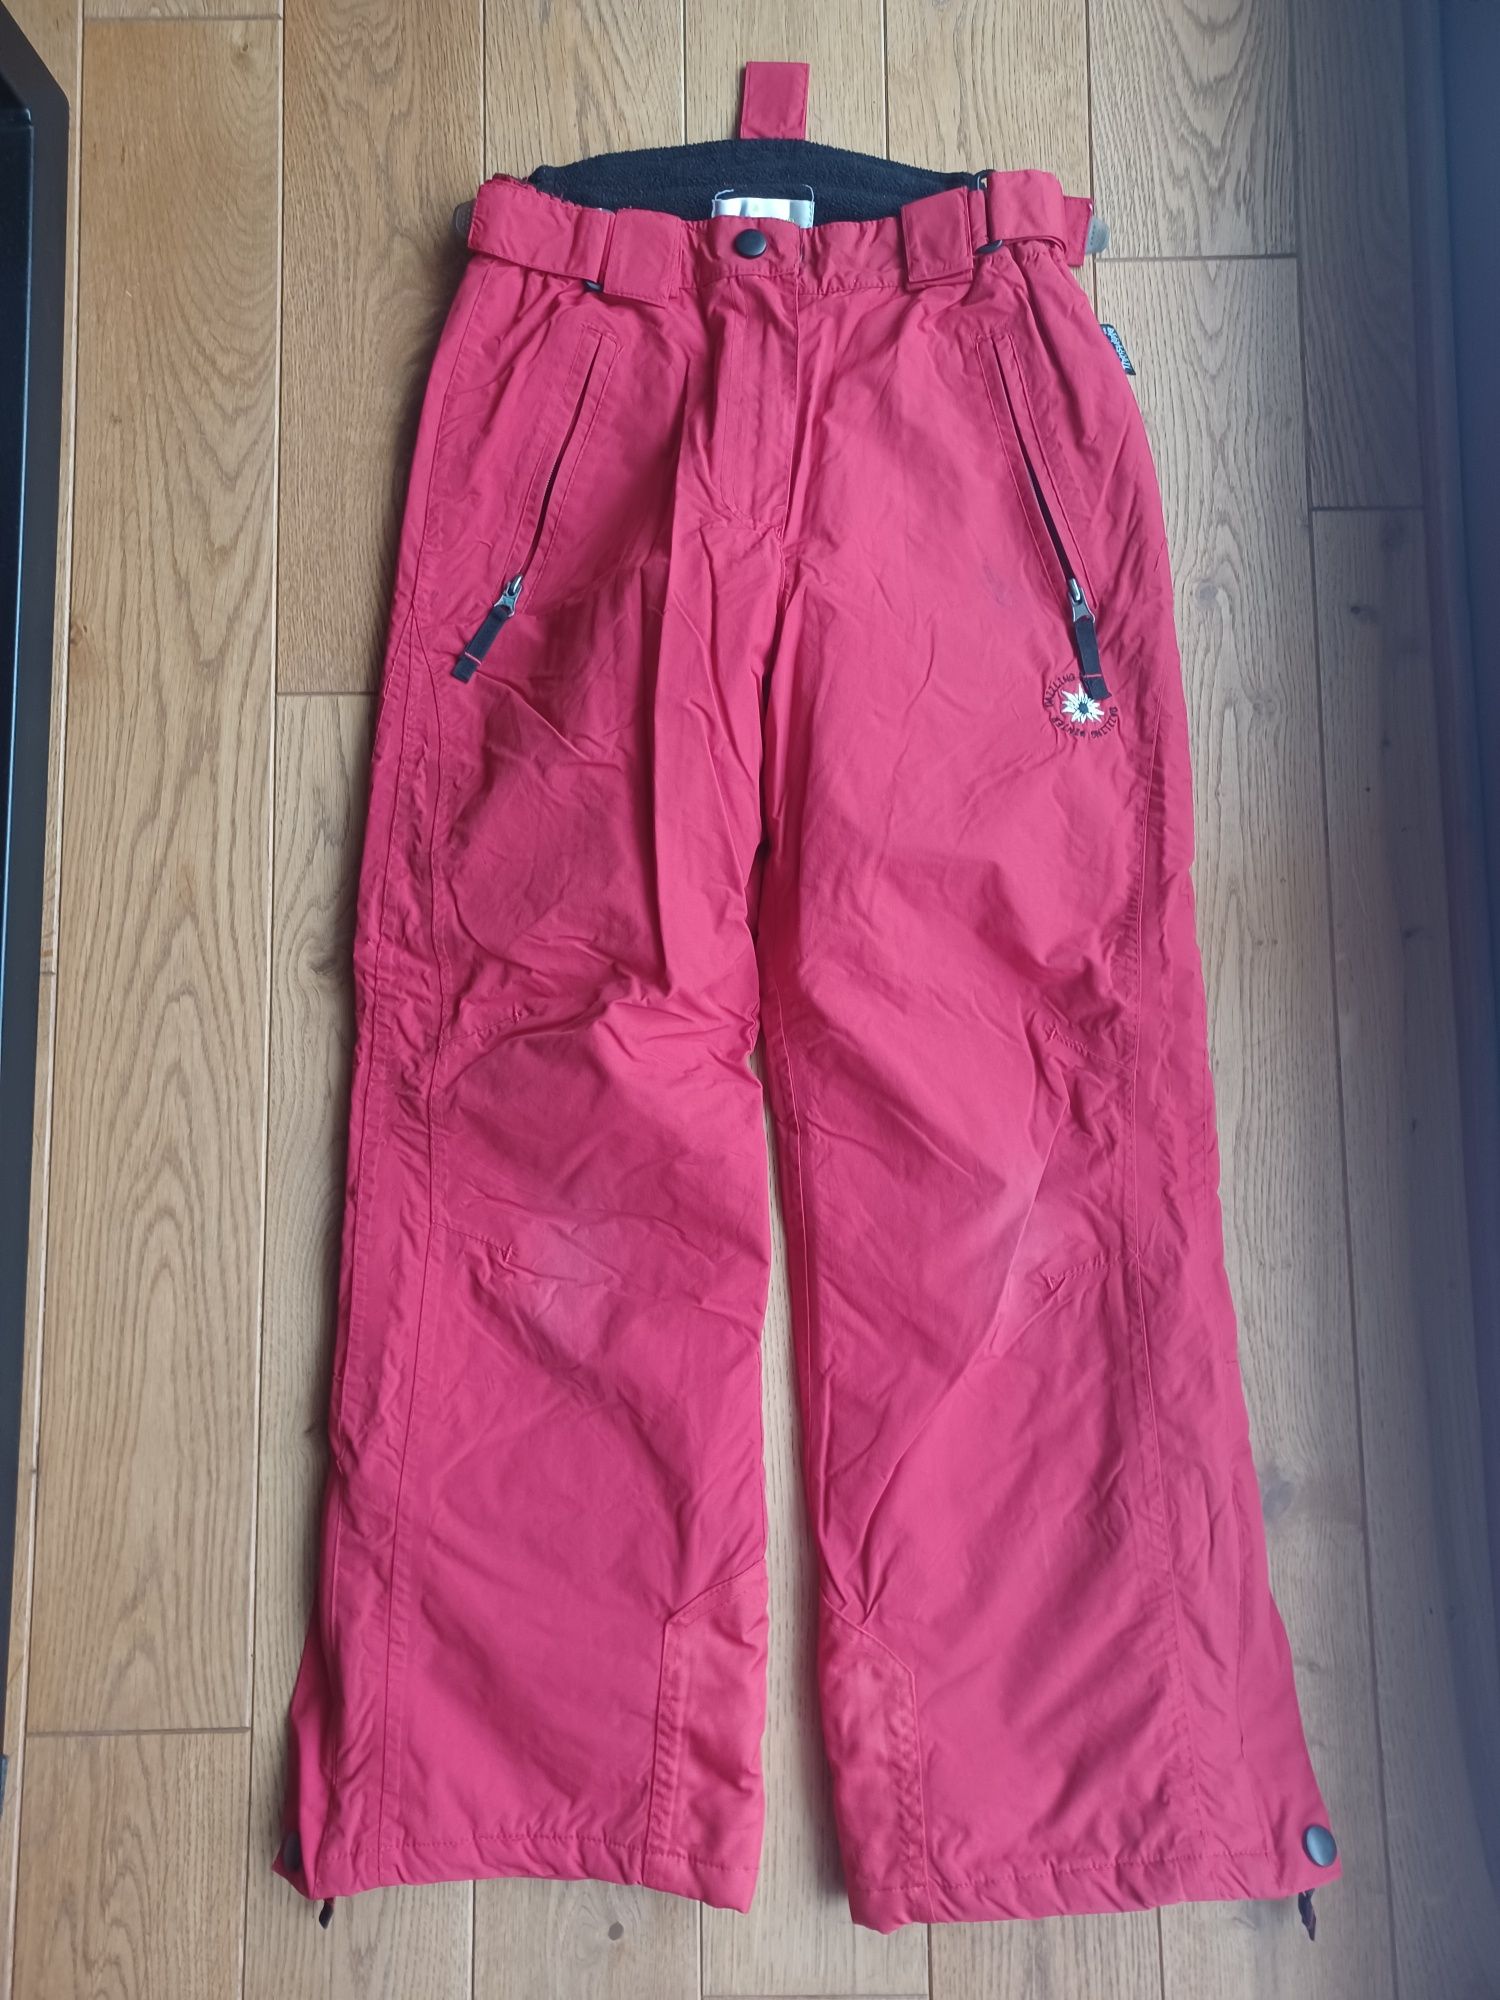 Spodnie narciarskie czerwone rozm.146cm - 11lat